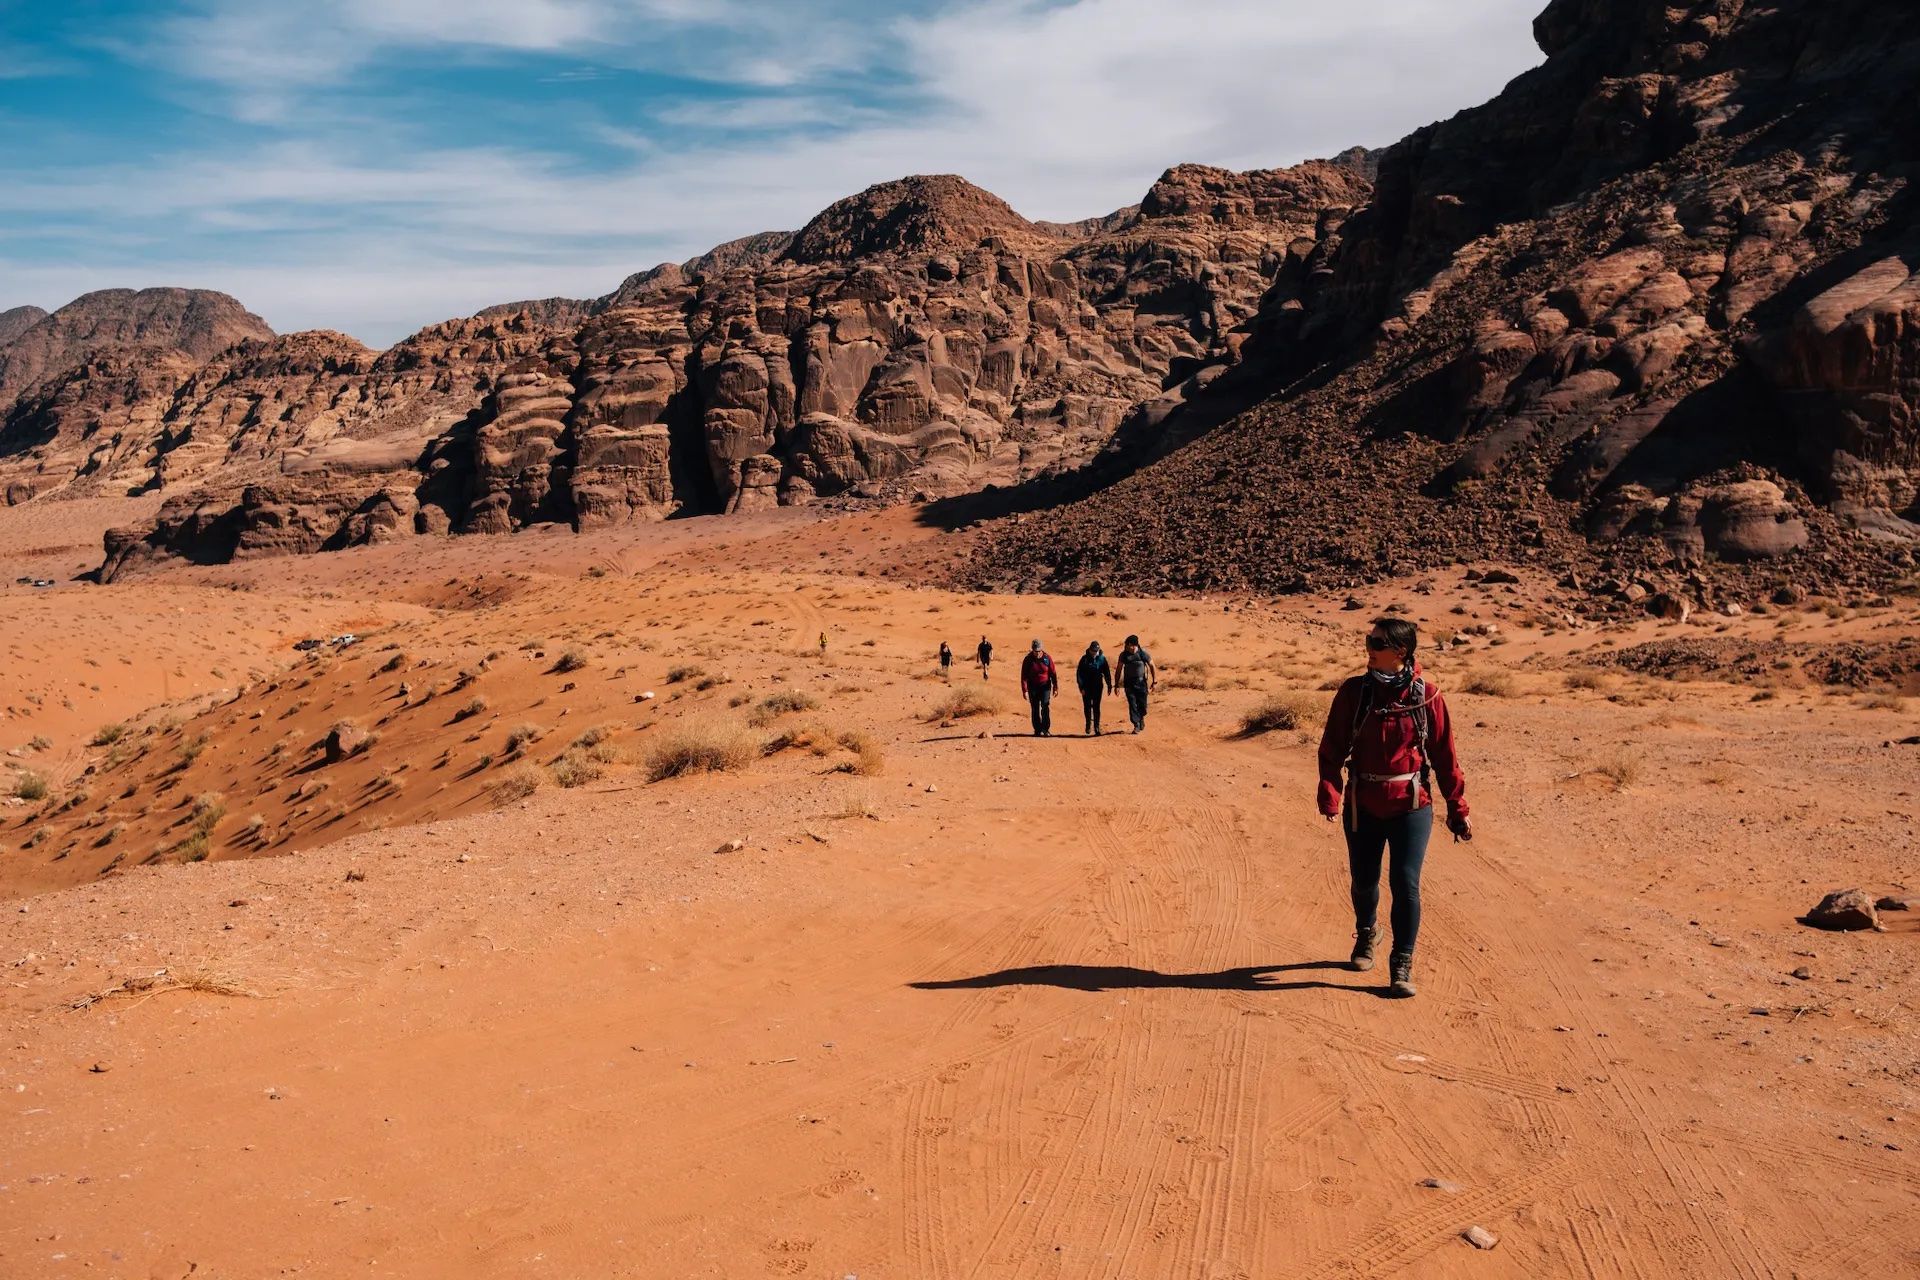 Hiking in Wadi Rum. Photo: Tom Barker.